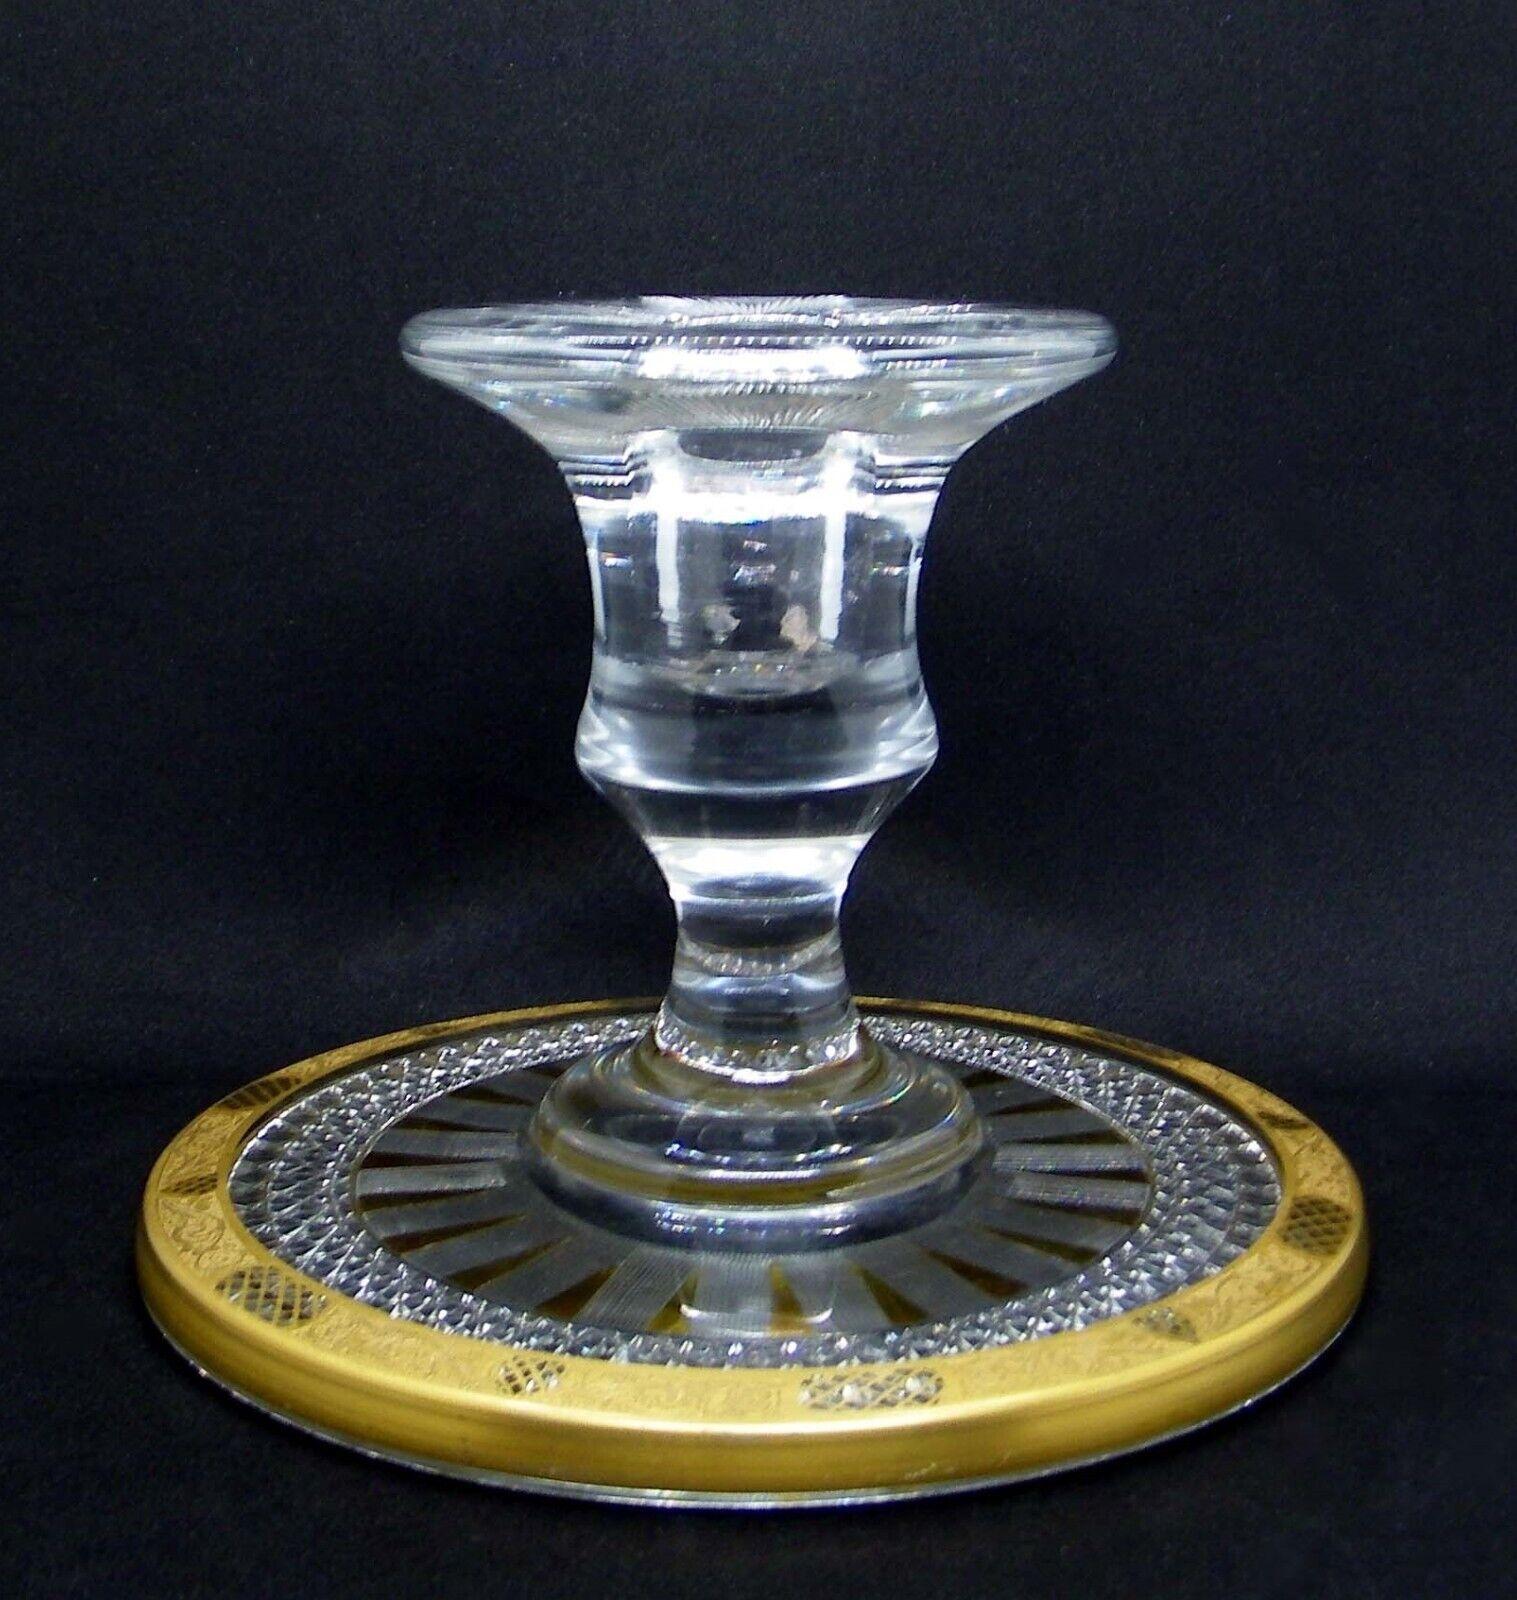 19. Jh. Französisches antikes geschliffenes Kristall / goldumrandeter Deluxe-Kerzenständer. Dieses Stück ist atemberaubend! Die Details sind erstaunlich.